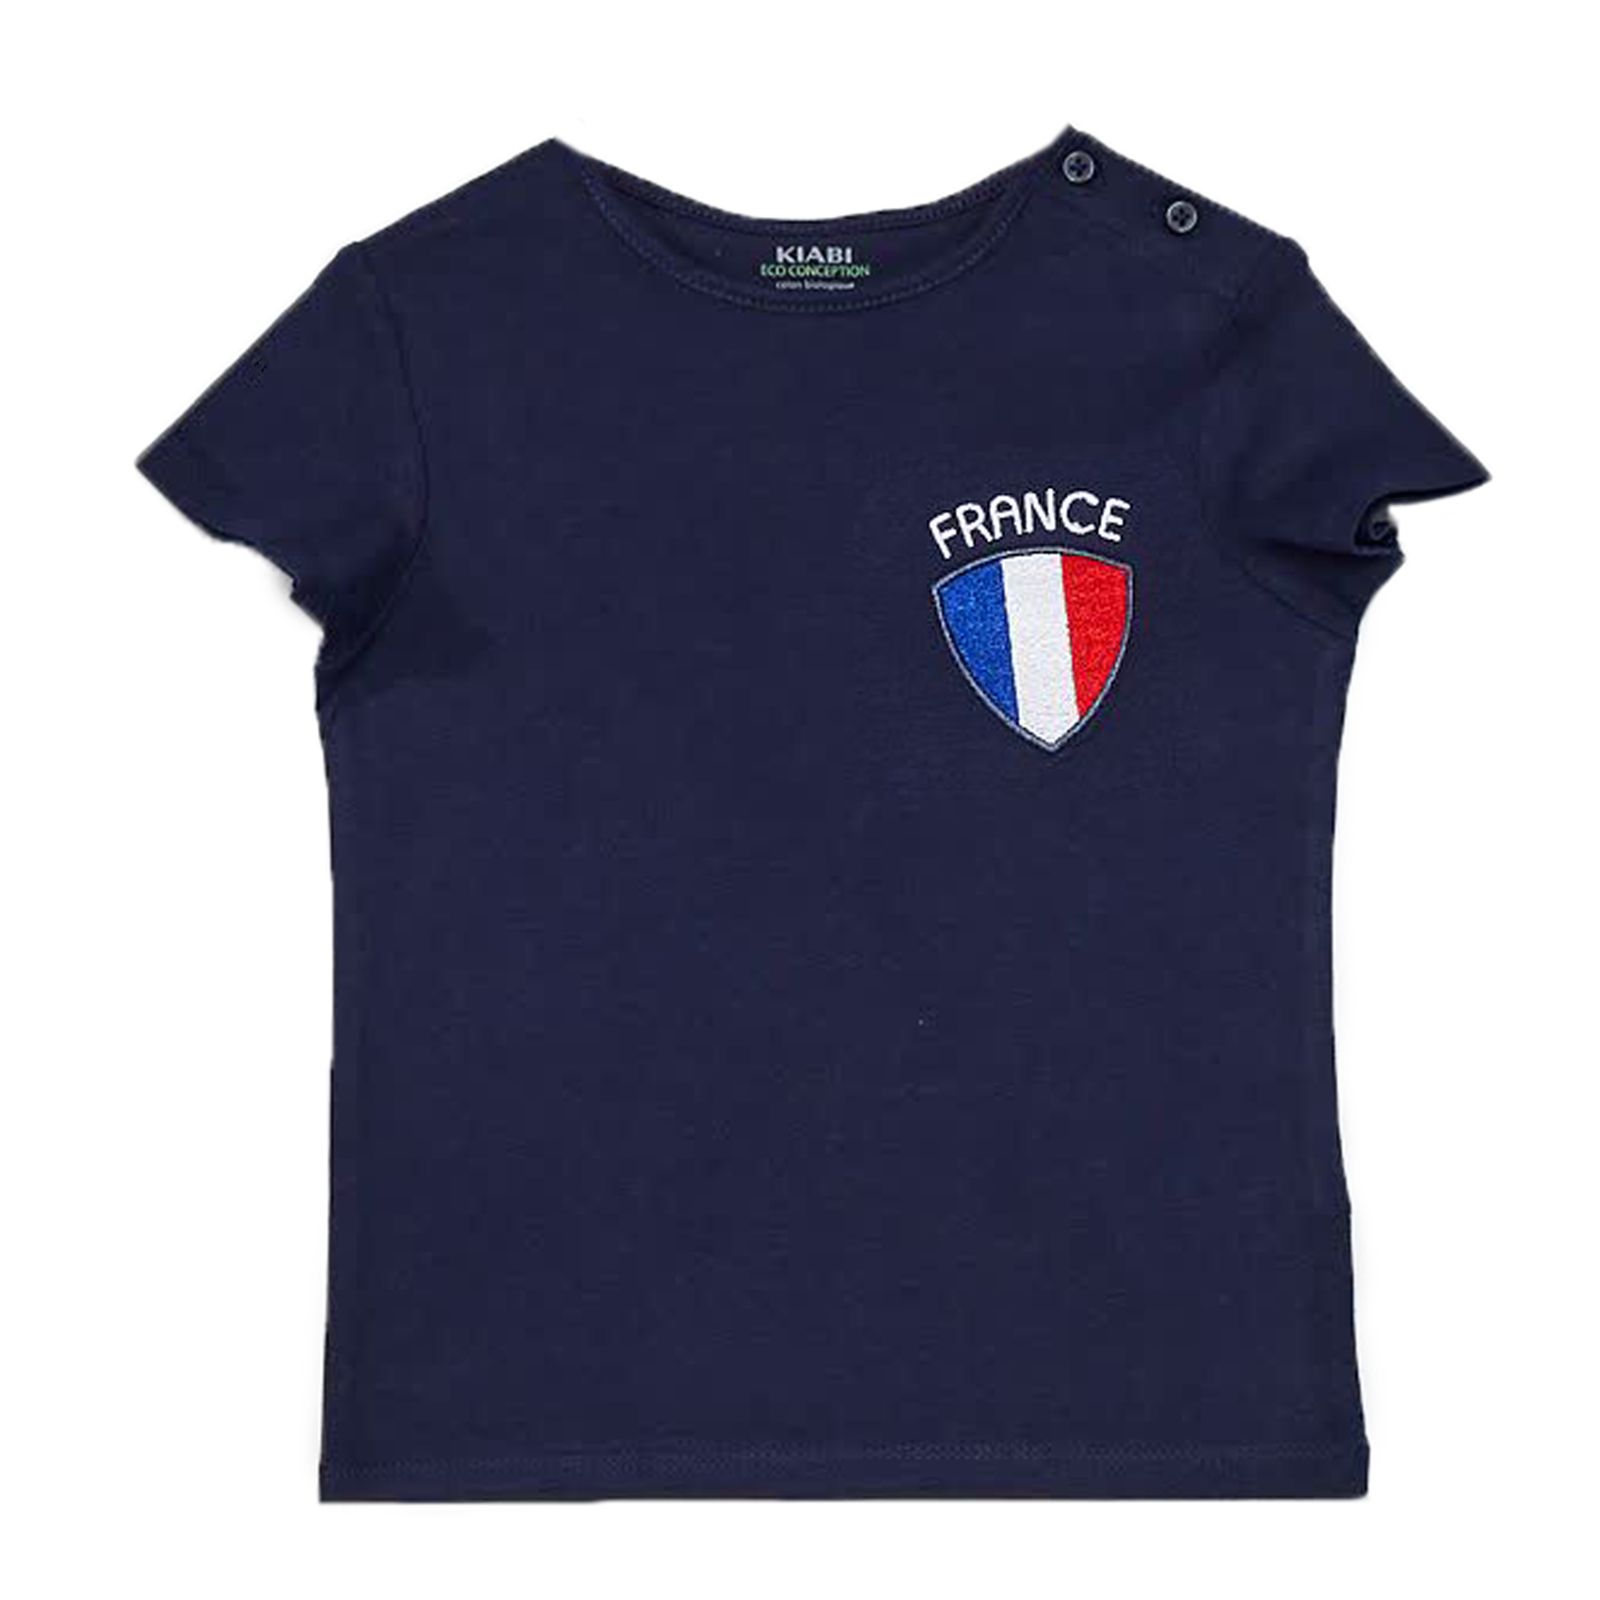 تی شرت آستین کوتاه پسرانه کیابی مدل فرانسه XO040 -  - 1